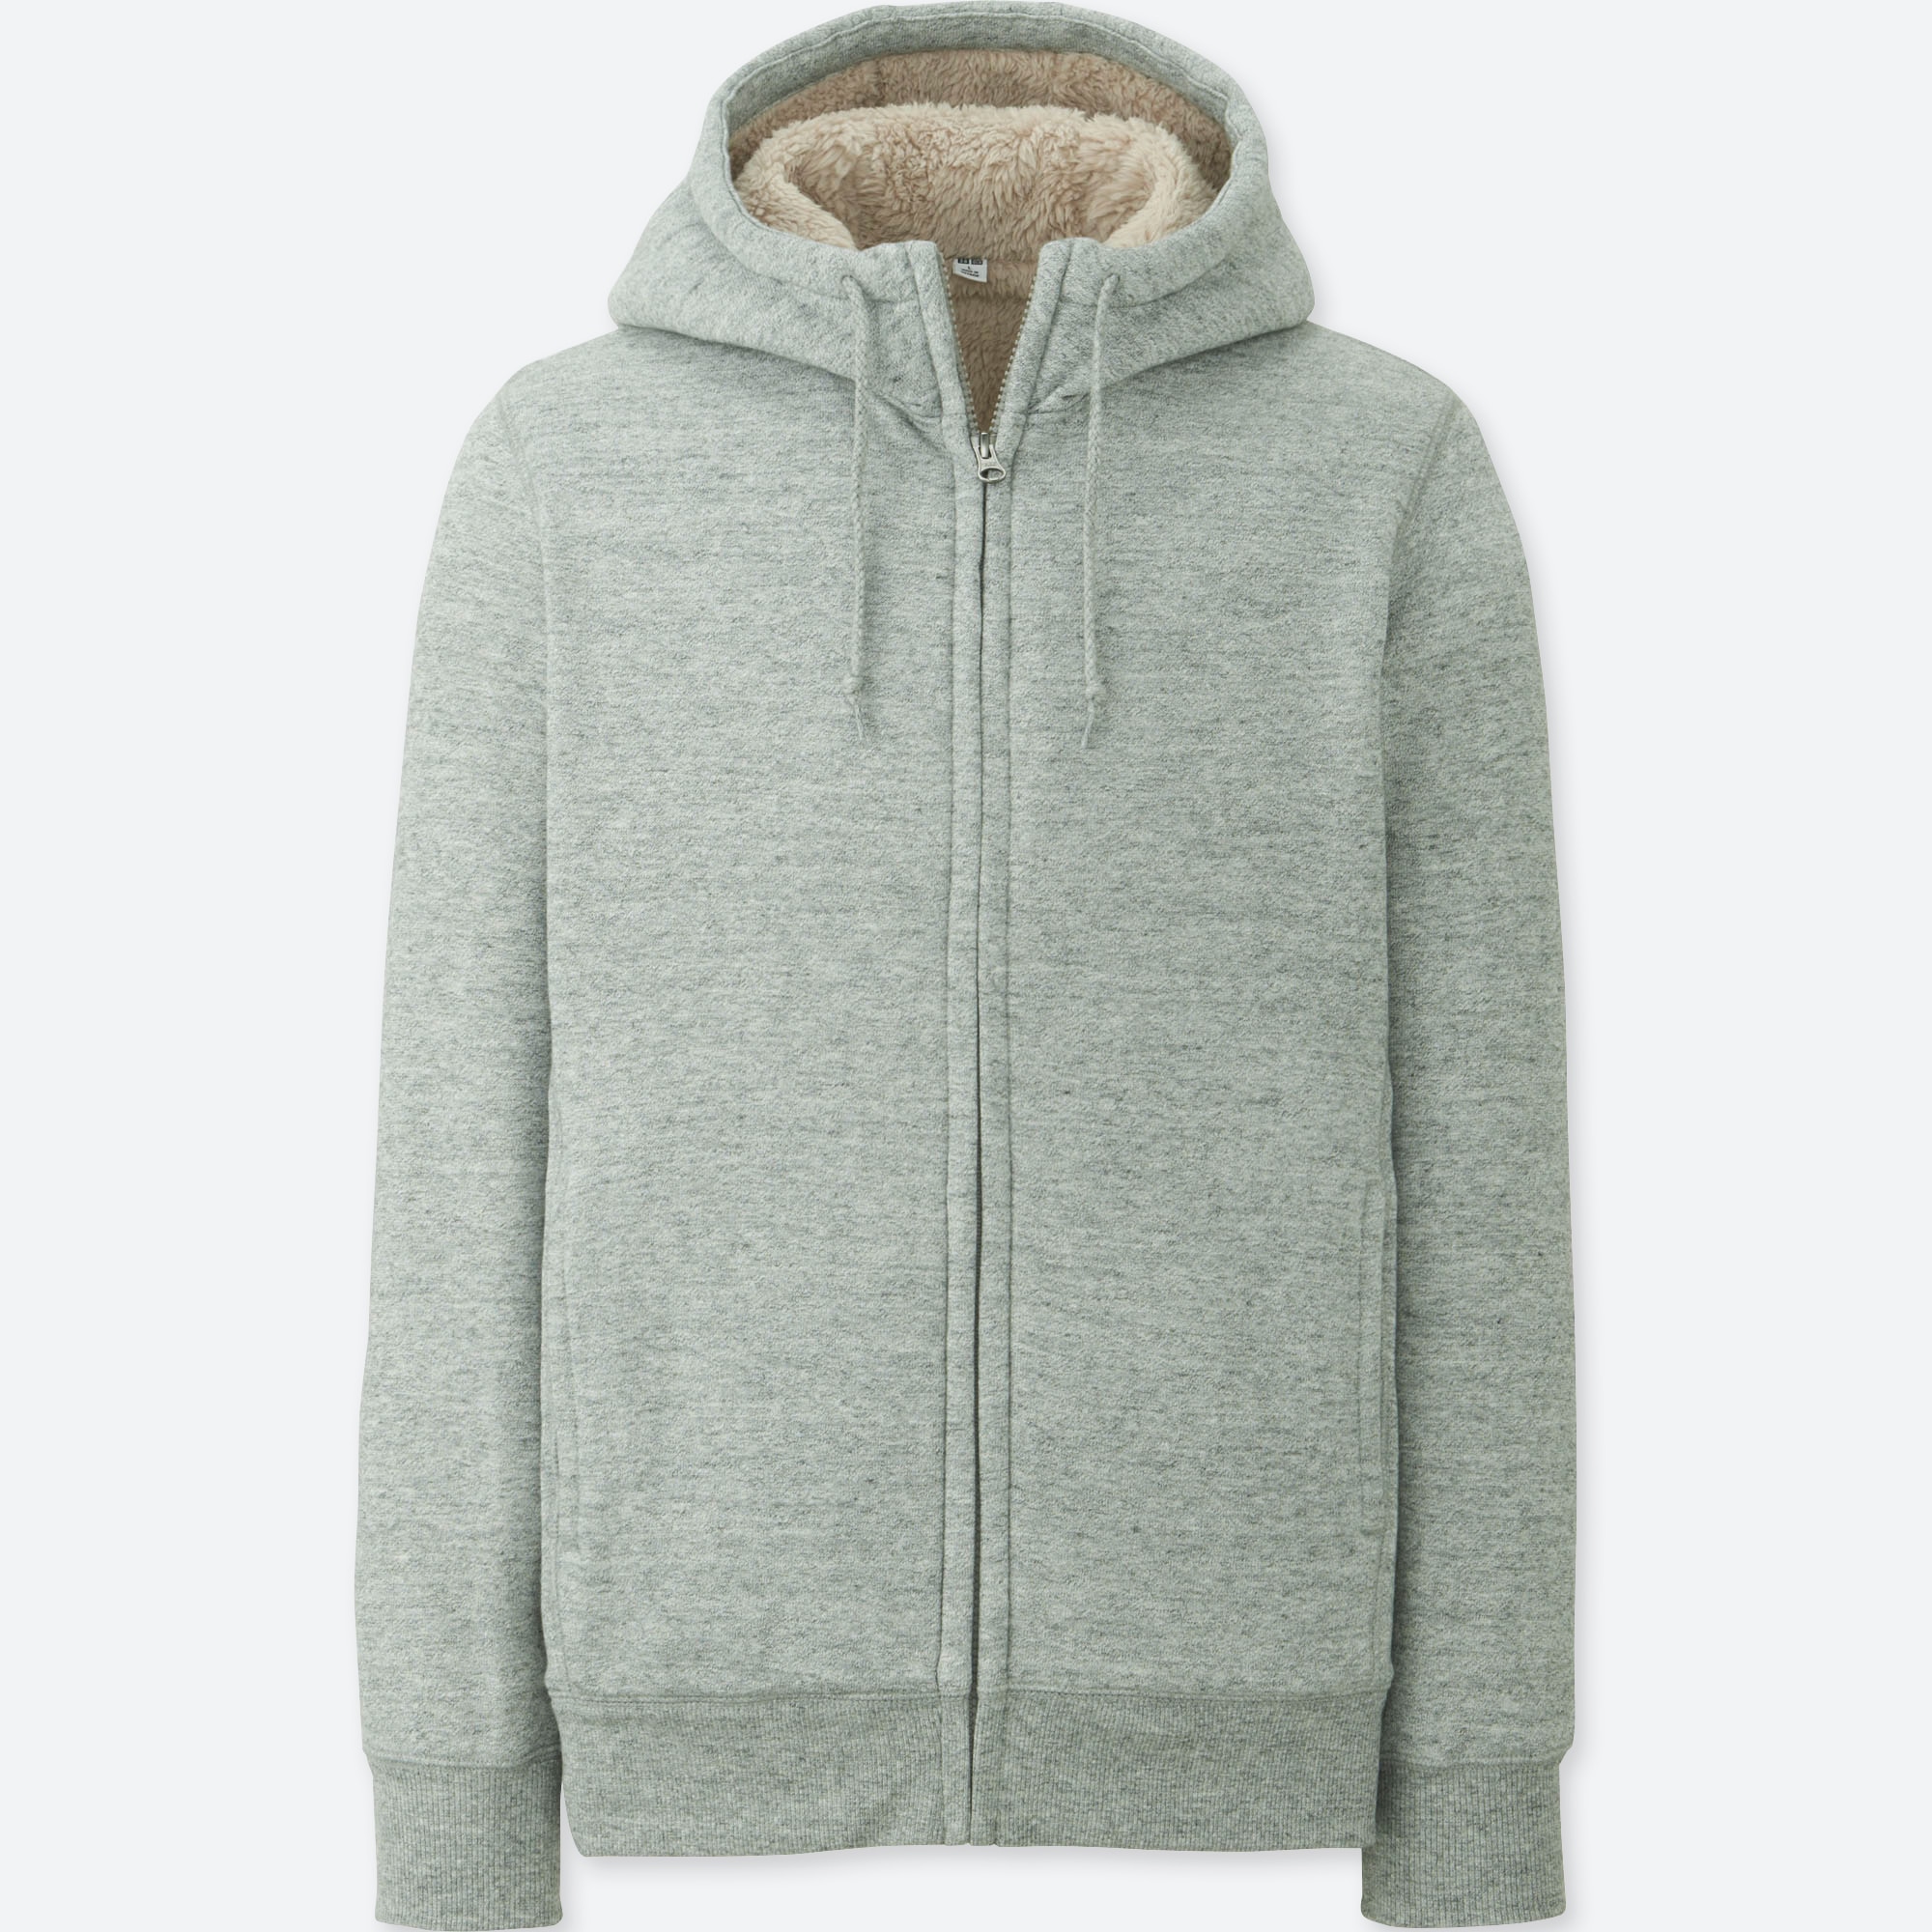 mens gray zip up hoodie